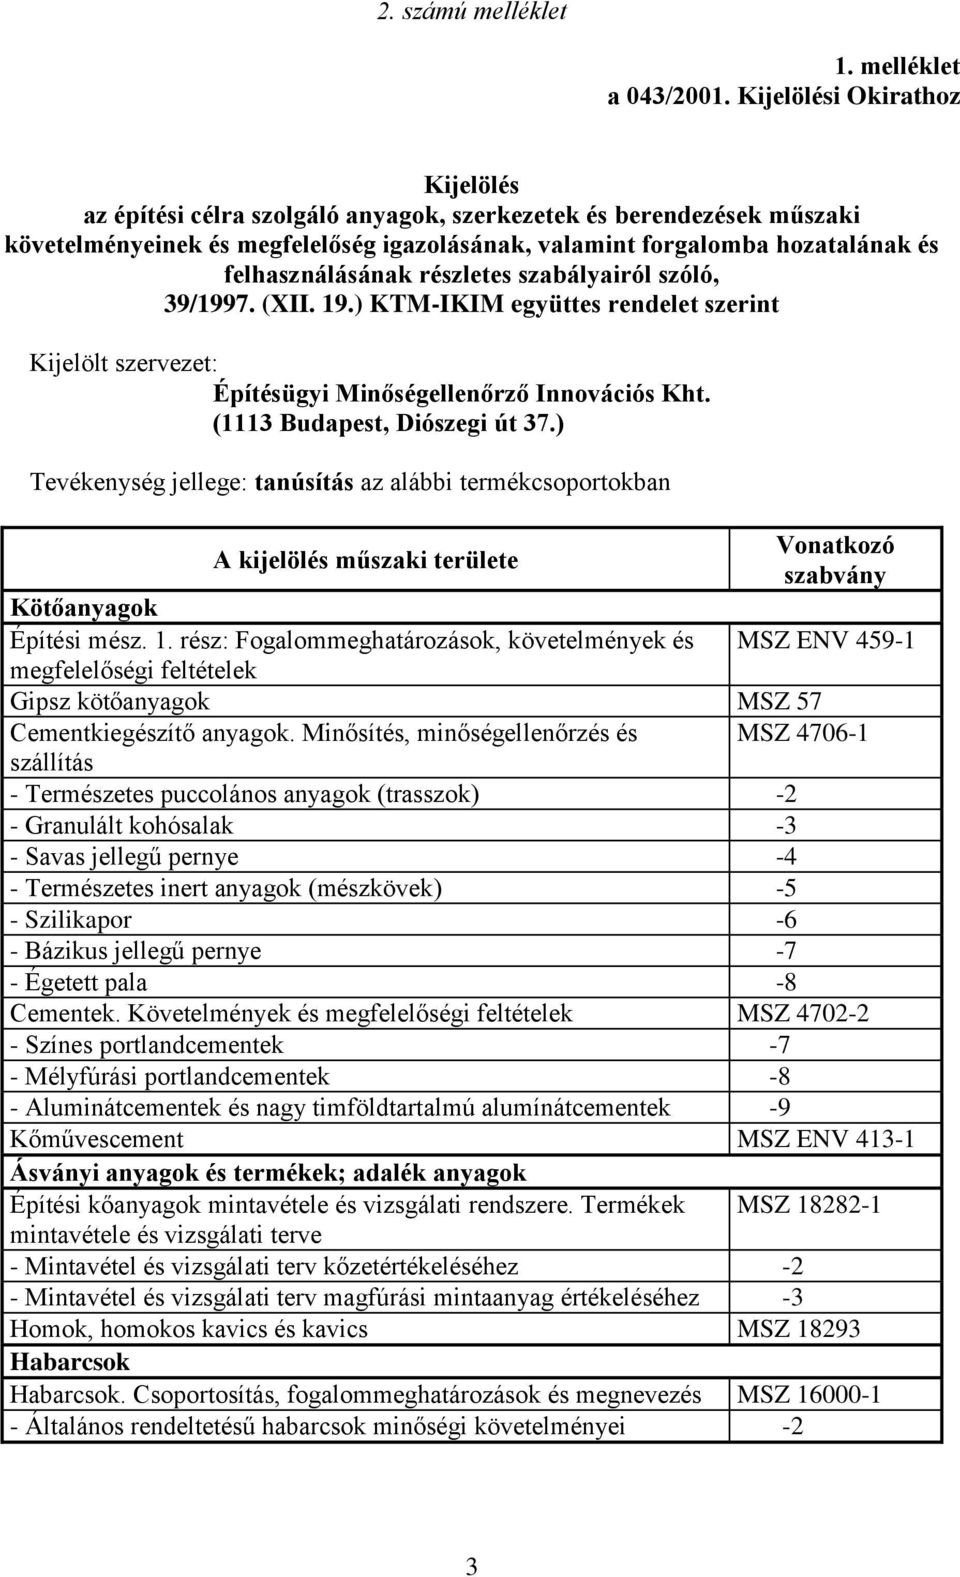 felhasználásának részletes szabályairól szóló, 39/1997. (XII. 19.) KTM-IKIM együttes rendelet szerint Kijelölt szervezet: Építésügyi Minőségellenőrző Innovációs Kht. (1113 Budapest, Diószegi út 37.